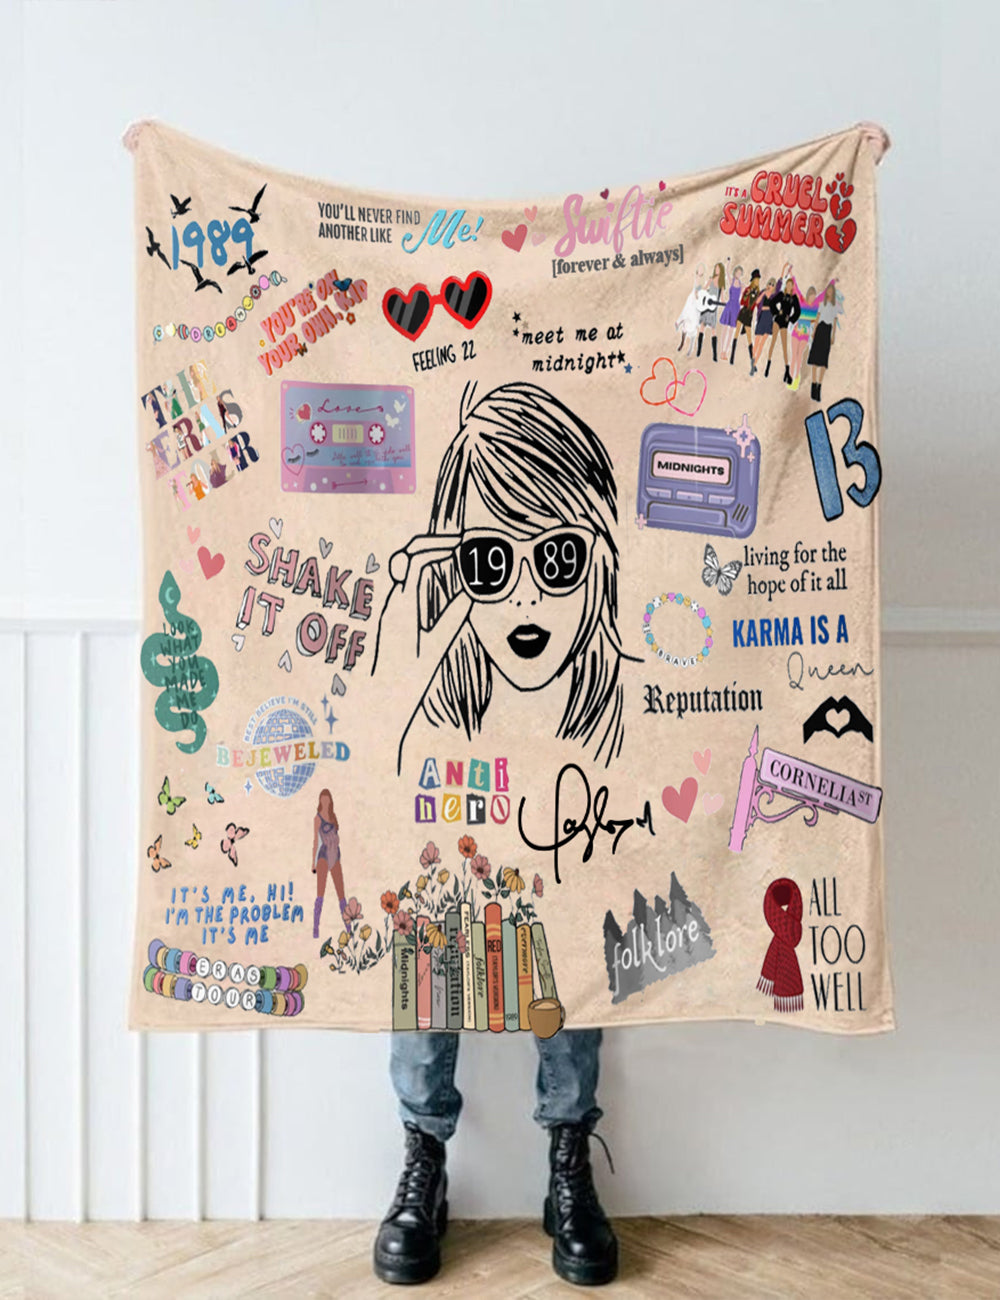 Swiftie White Blanket - Blanket Taylor Swift For Fan Gifts